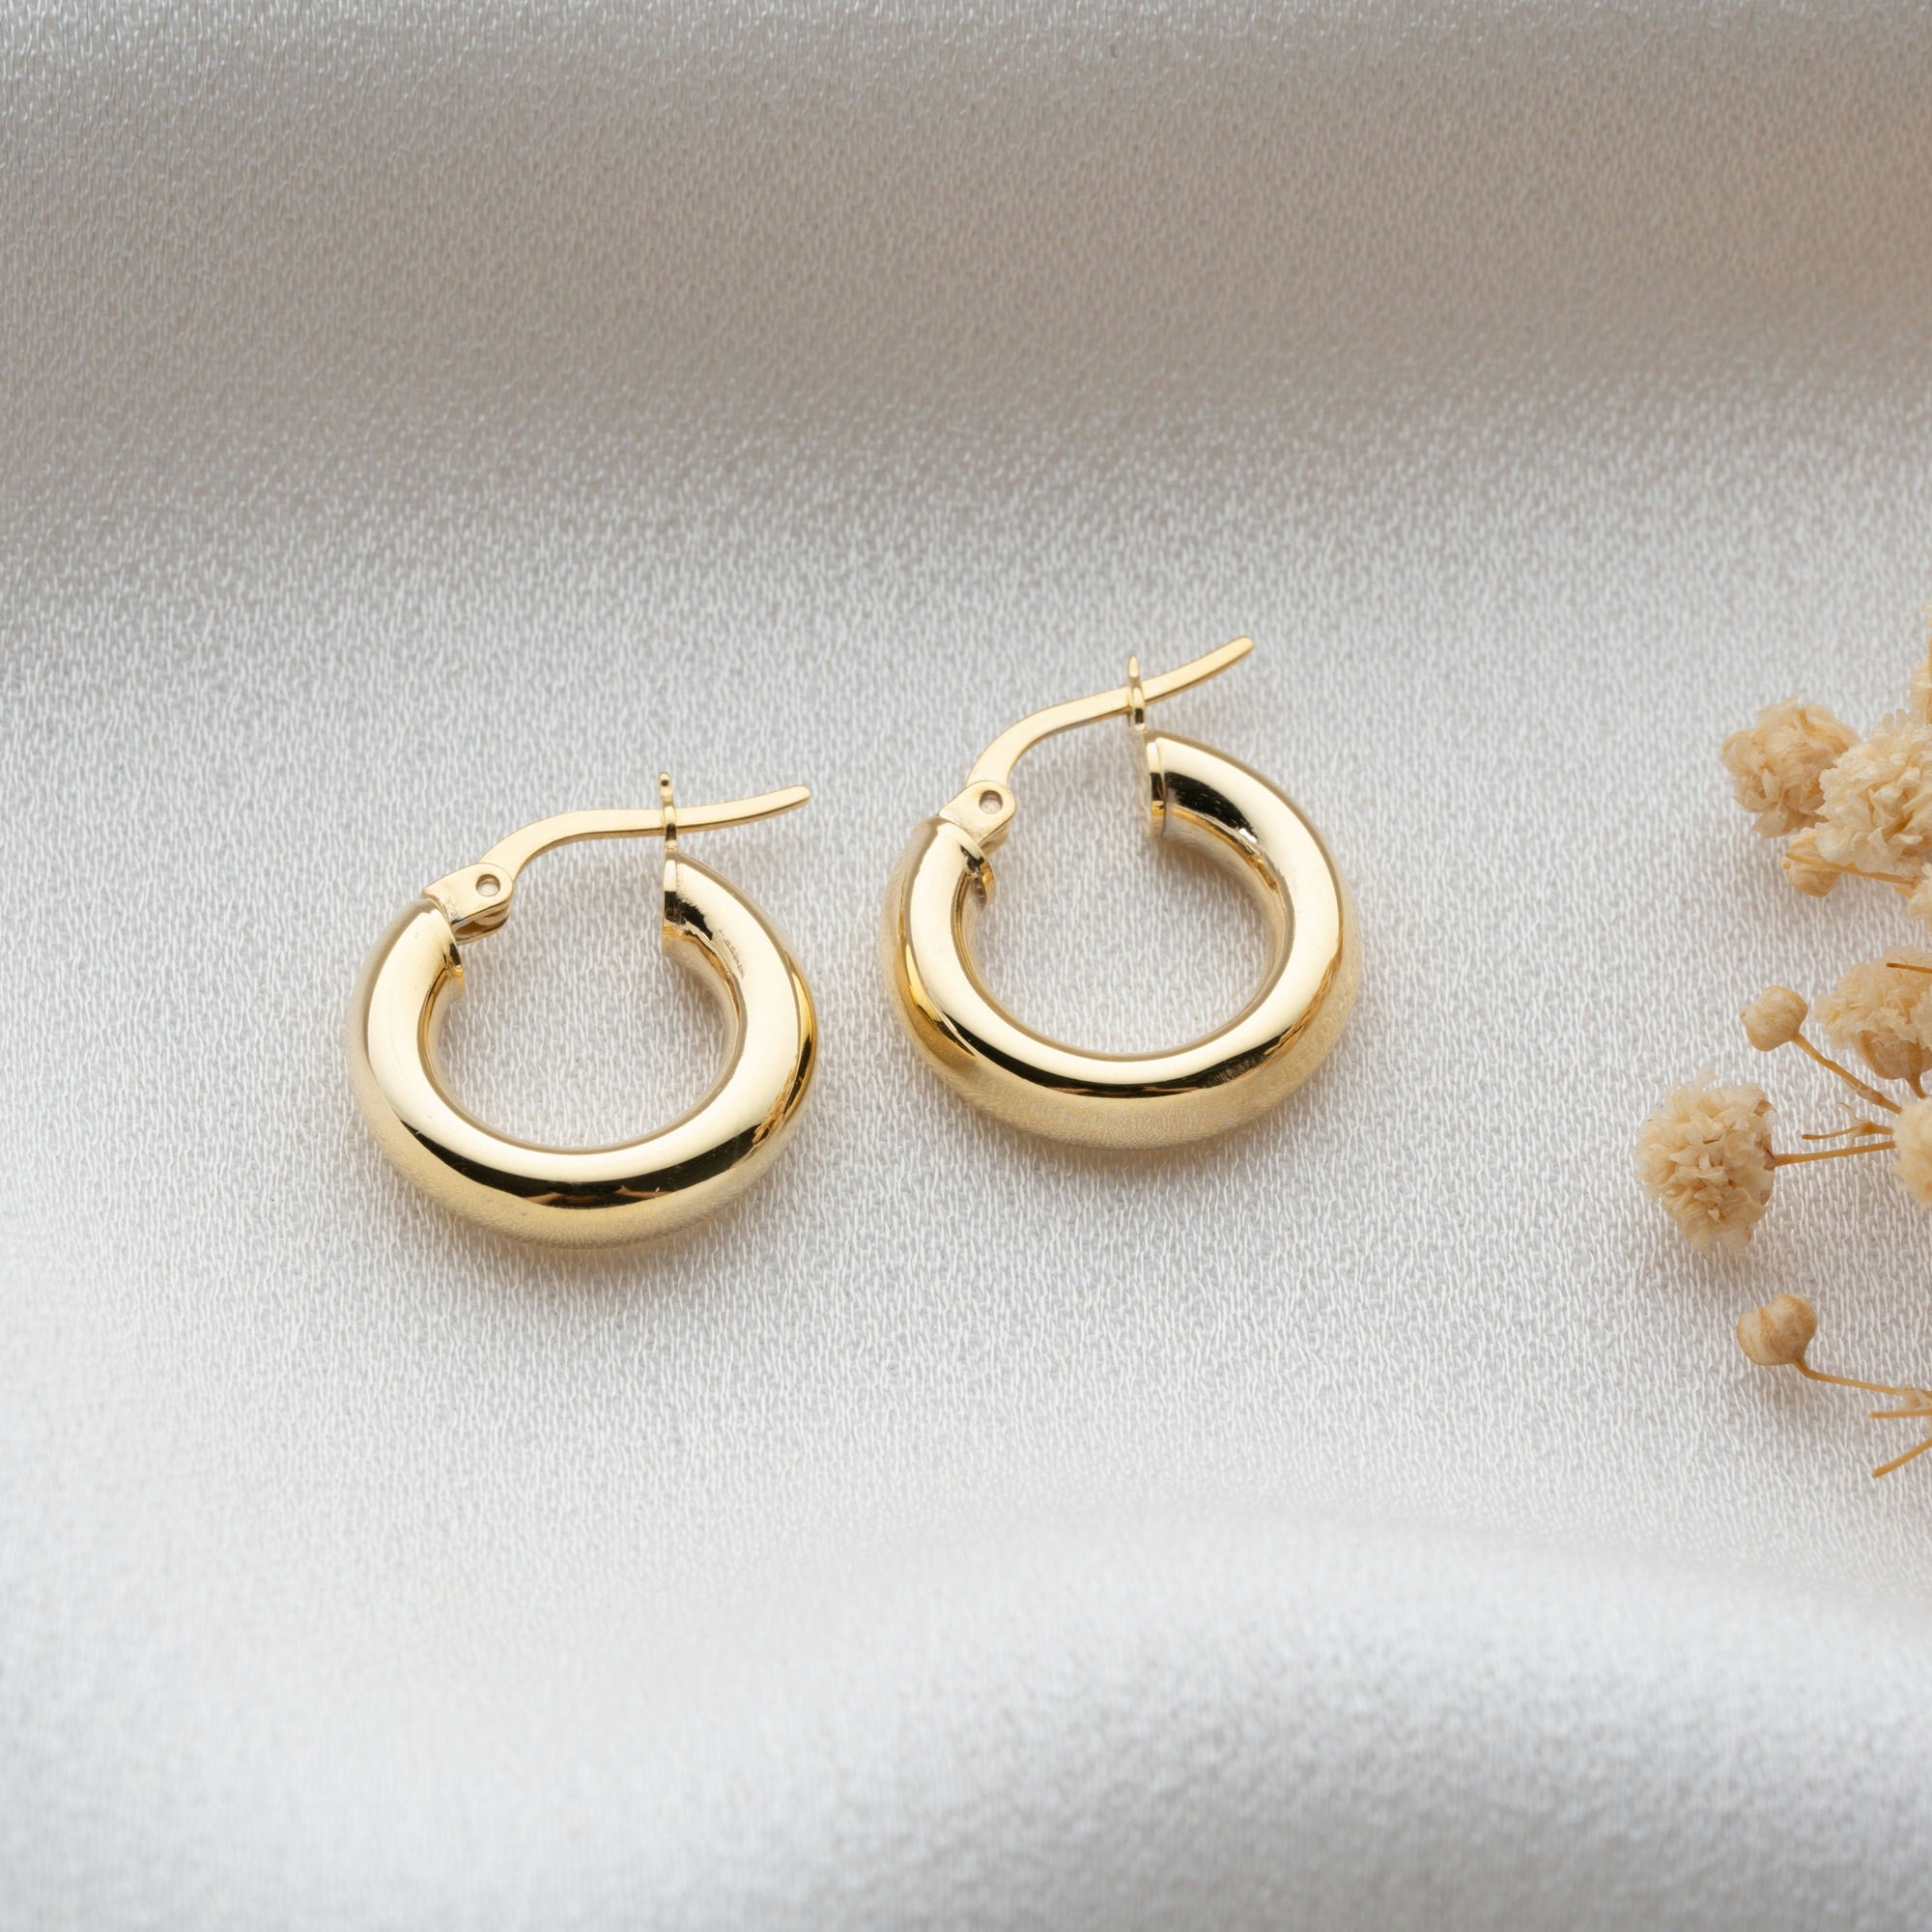 Chunky gold hoop earrings